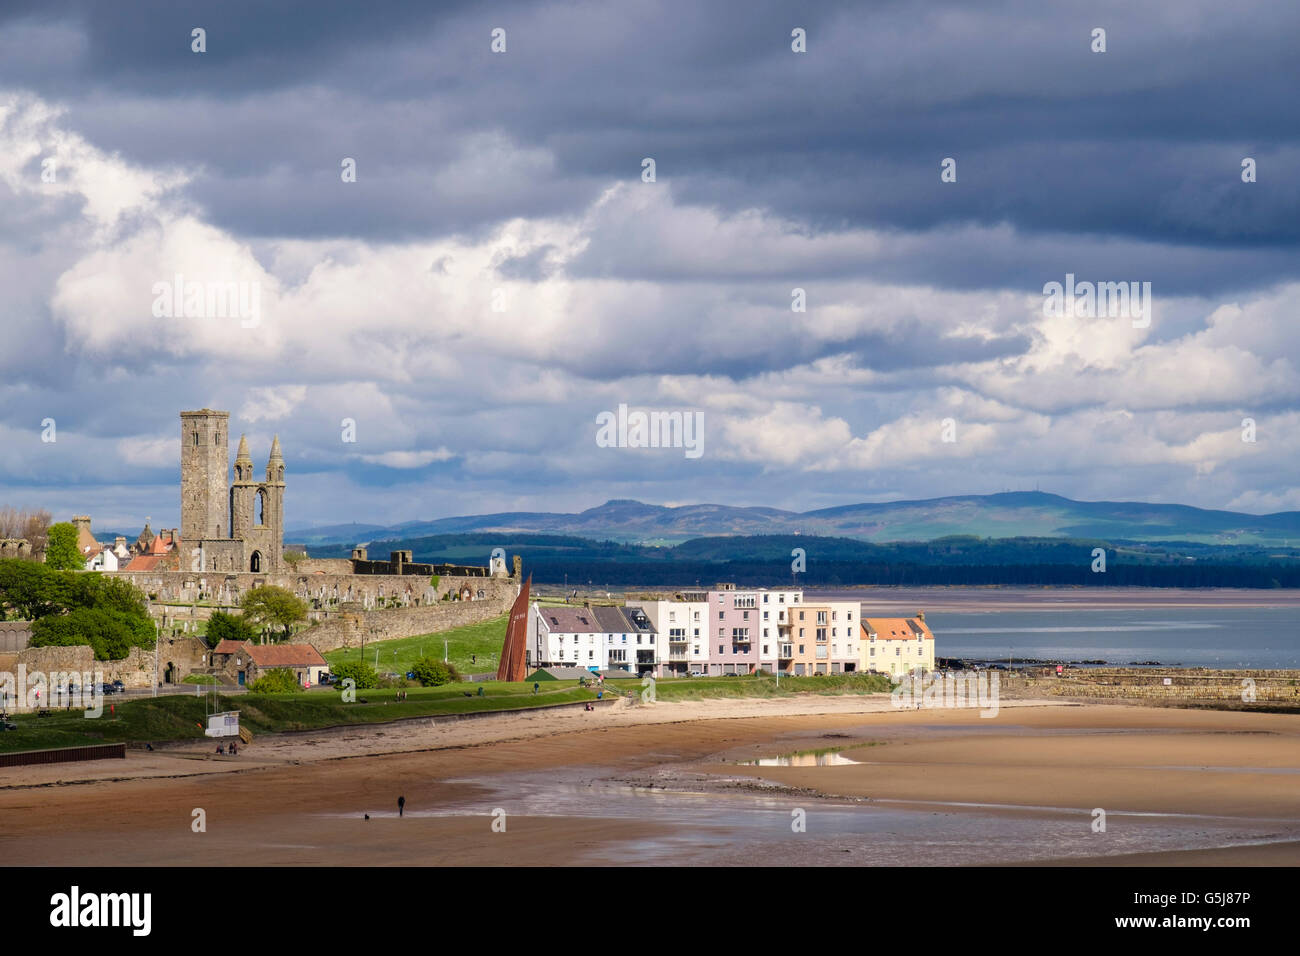 Blick über East Sands Beach, Stadt, Hafen und Kathedrale Ruinen in der Pfeife Ostküste entfernt. Royal Burgh St Andrews Fife Schottland Großbritannien Großbritannien Stockfoto